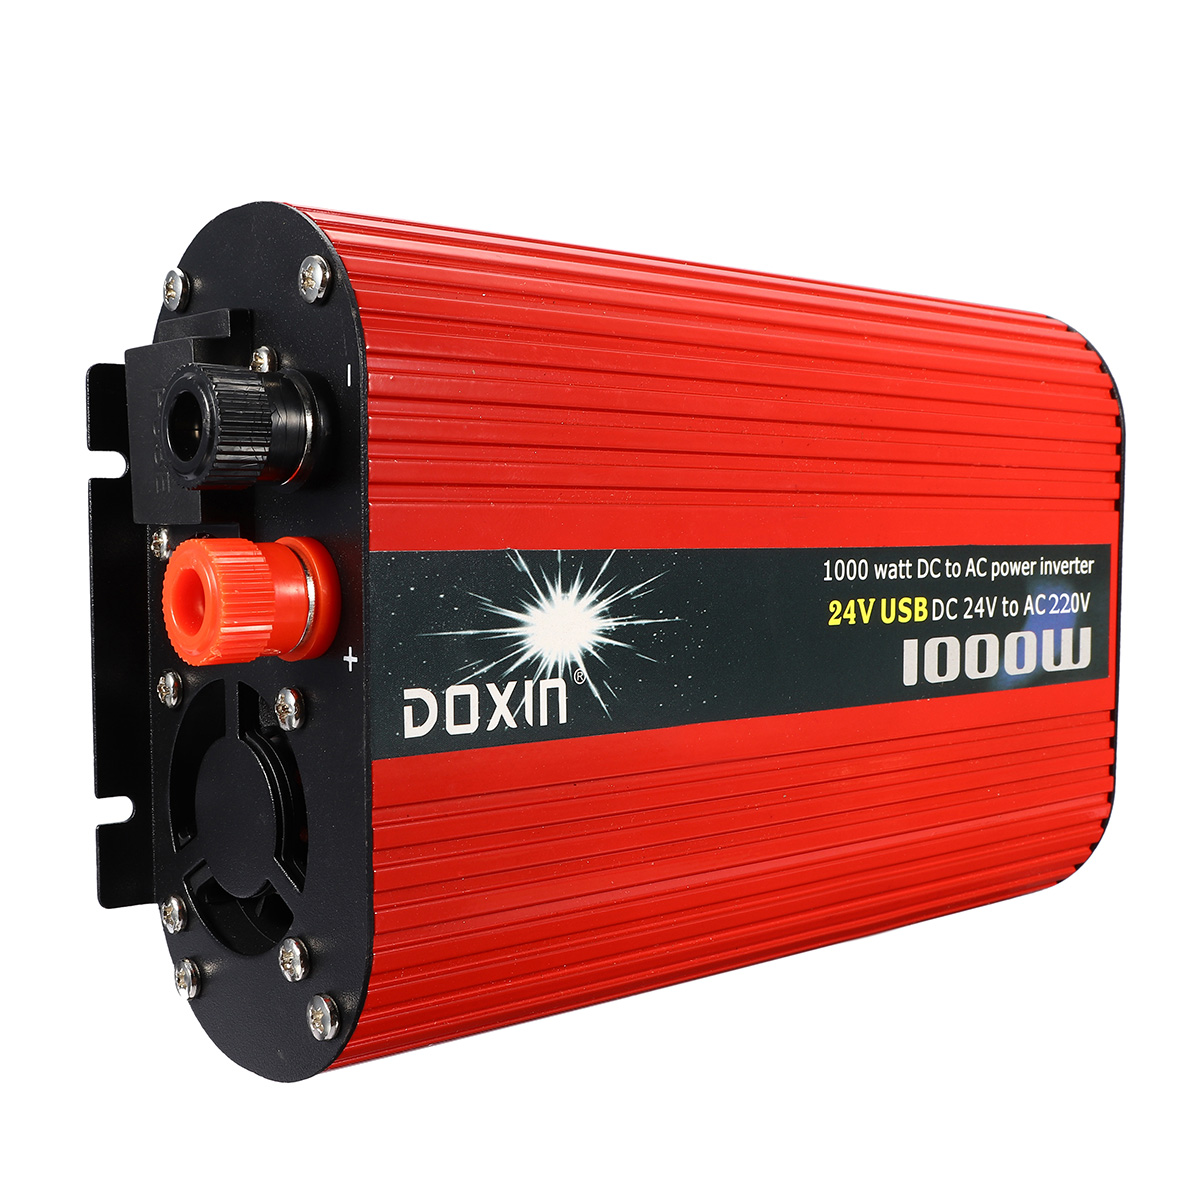 

DOXIN® 1000W Солнечная Преобразователь постоянного тока DC 12V / 24V в переменный 220V / 110V Модифицированный преобразователь синусоидальной волны